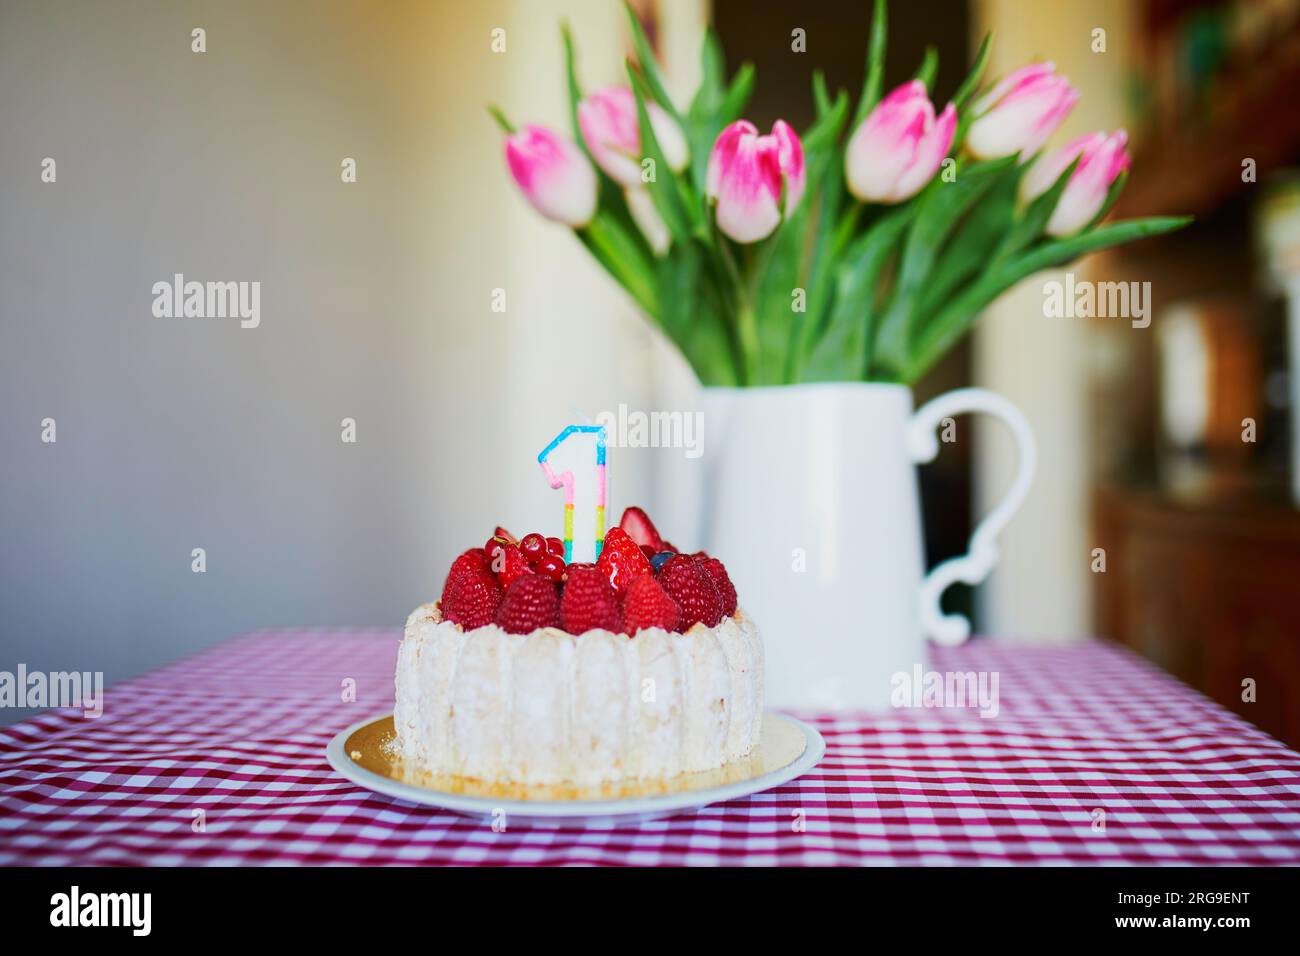 Delicioso pastel de frutas con frambuesas y vela en forma de número uno con un montón de hermosos tulipes rosas en jarrón. El primer cumpleaños del bebé Foto de stock